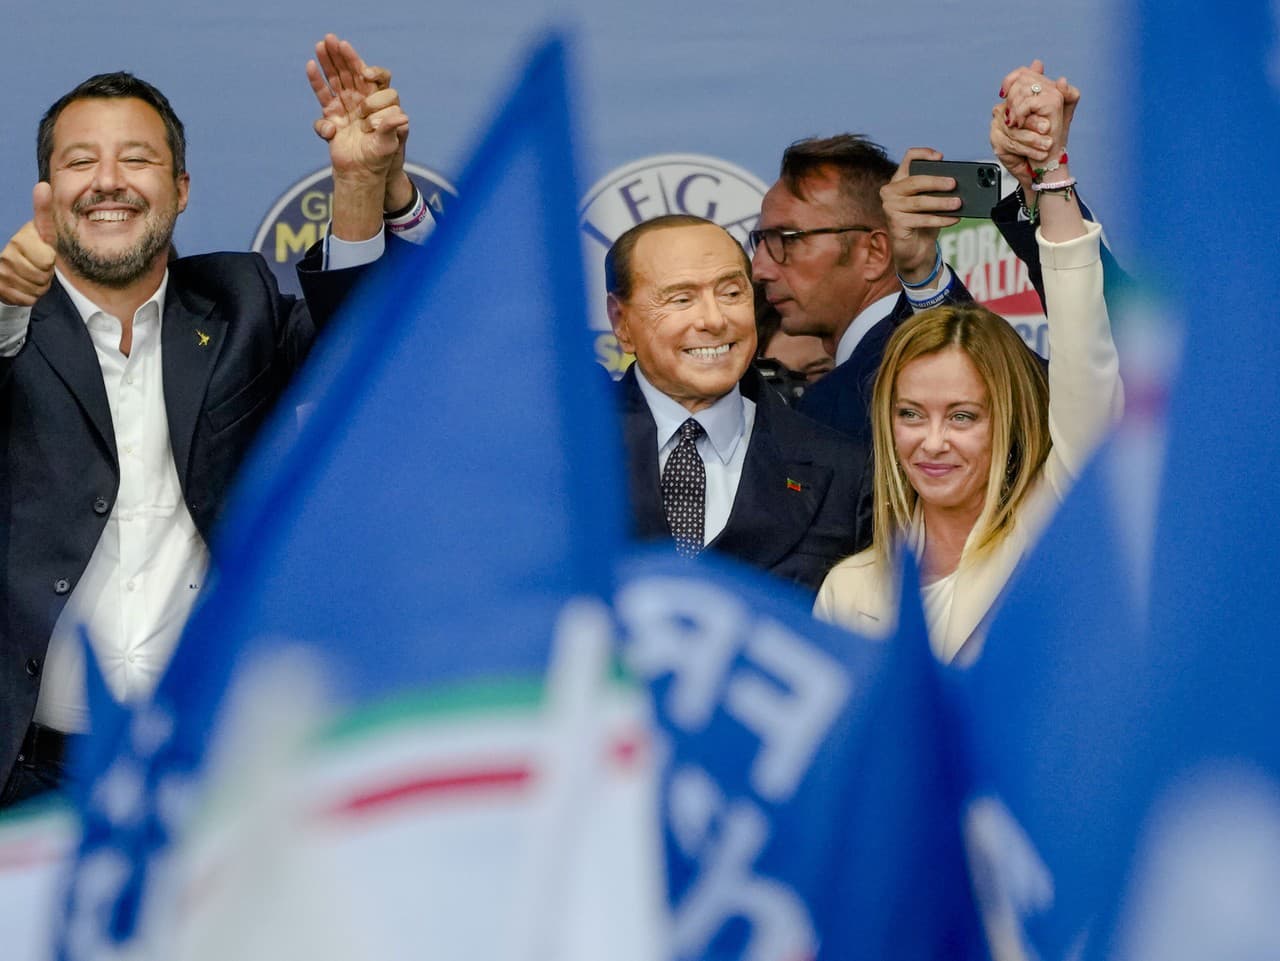 Konečné výsledky volieb v Taliansku potvrdili jasnú väčšinu pre pravicu